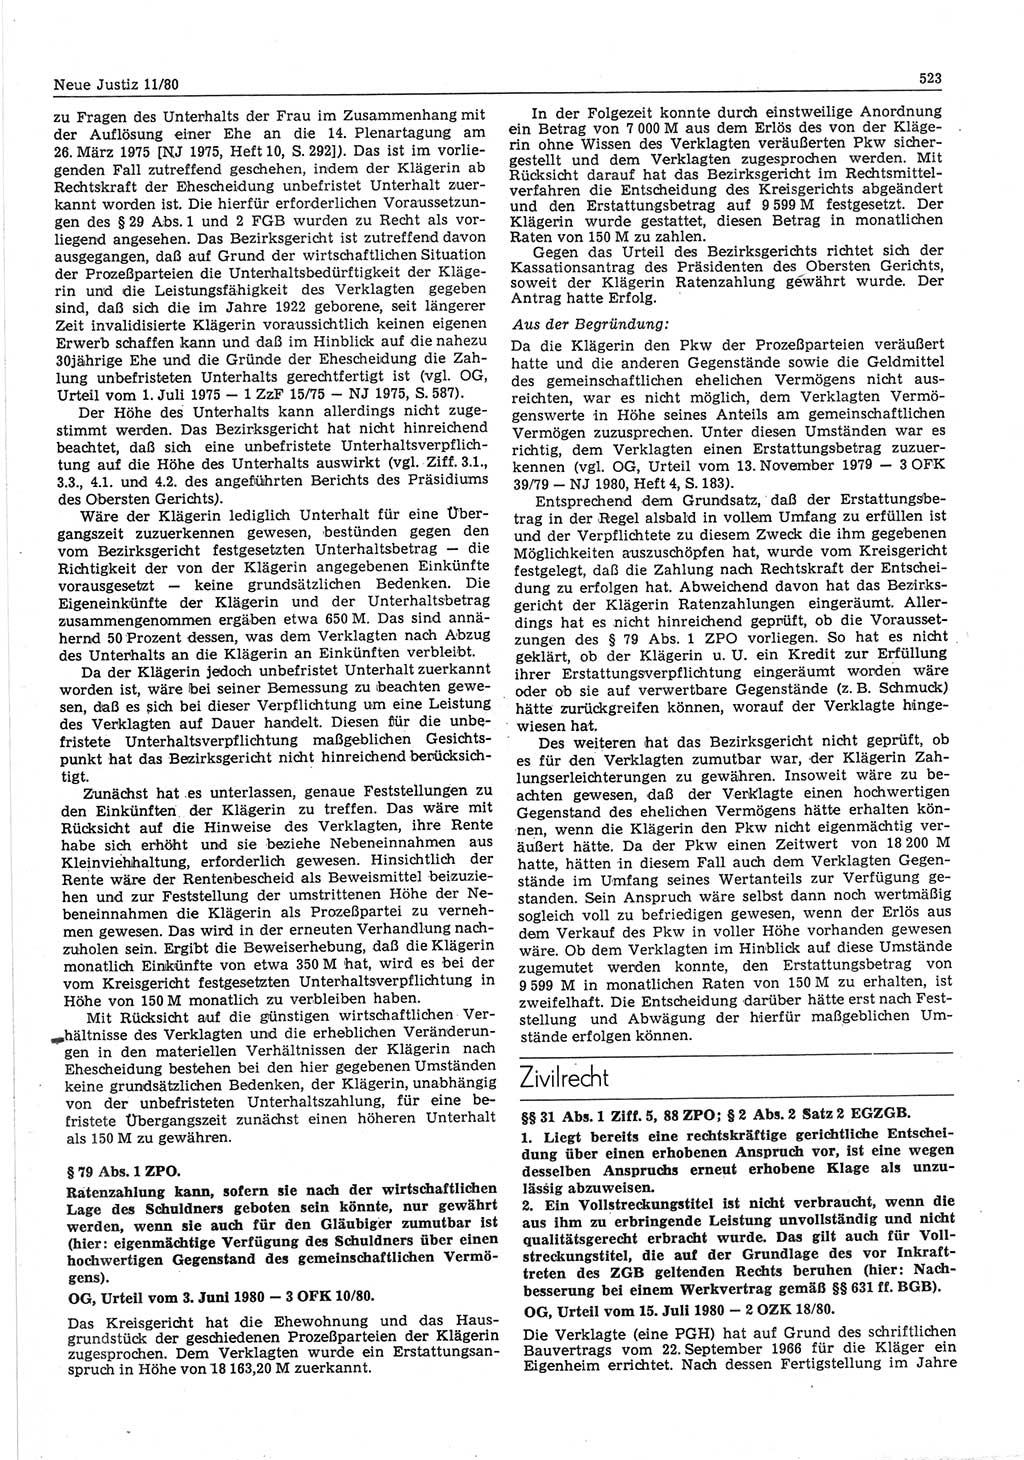 Neue Justiz (NJ), Zeitschrift für sozialistisches Recht und Gesetzlichkeit [Deutsche Demokratische Republik (DDR)], 34. Jahrgang 1980, Seite 523 (NJ DDR 1980, S. 523)